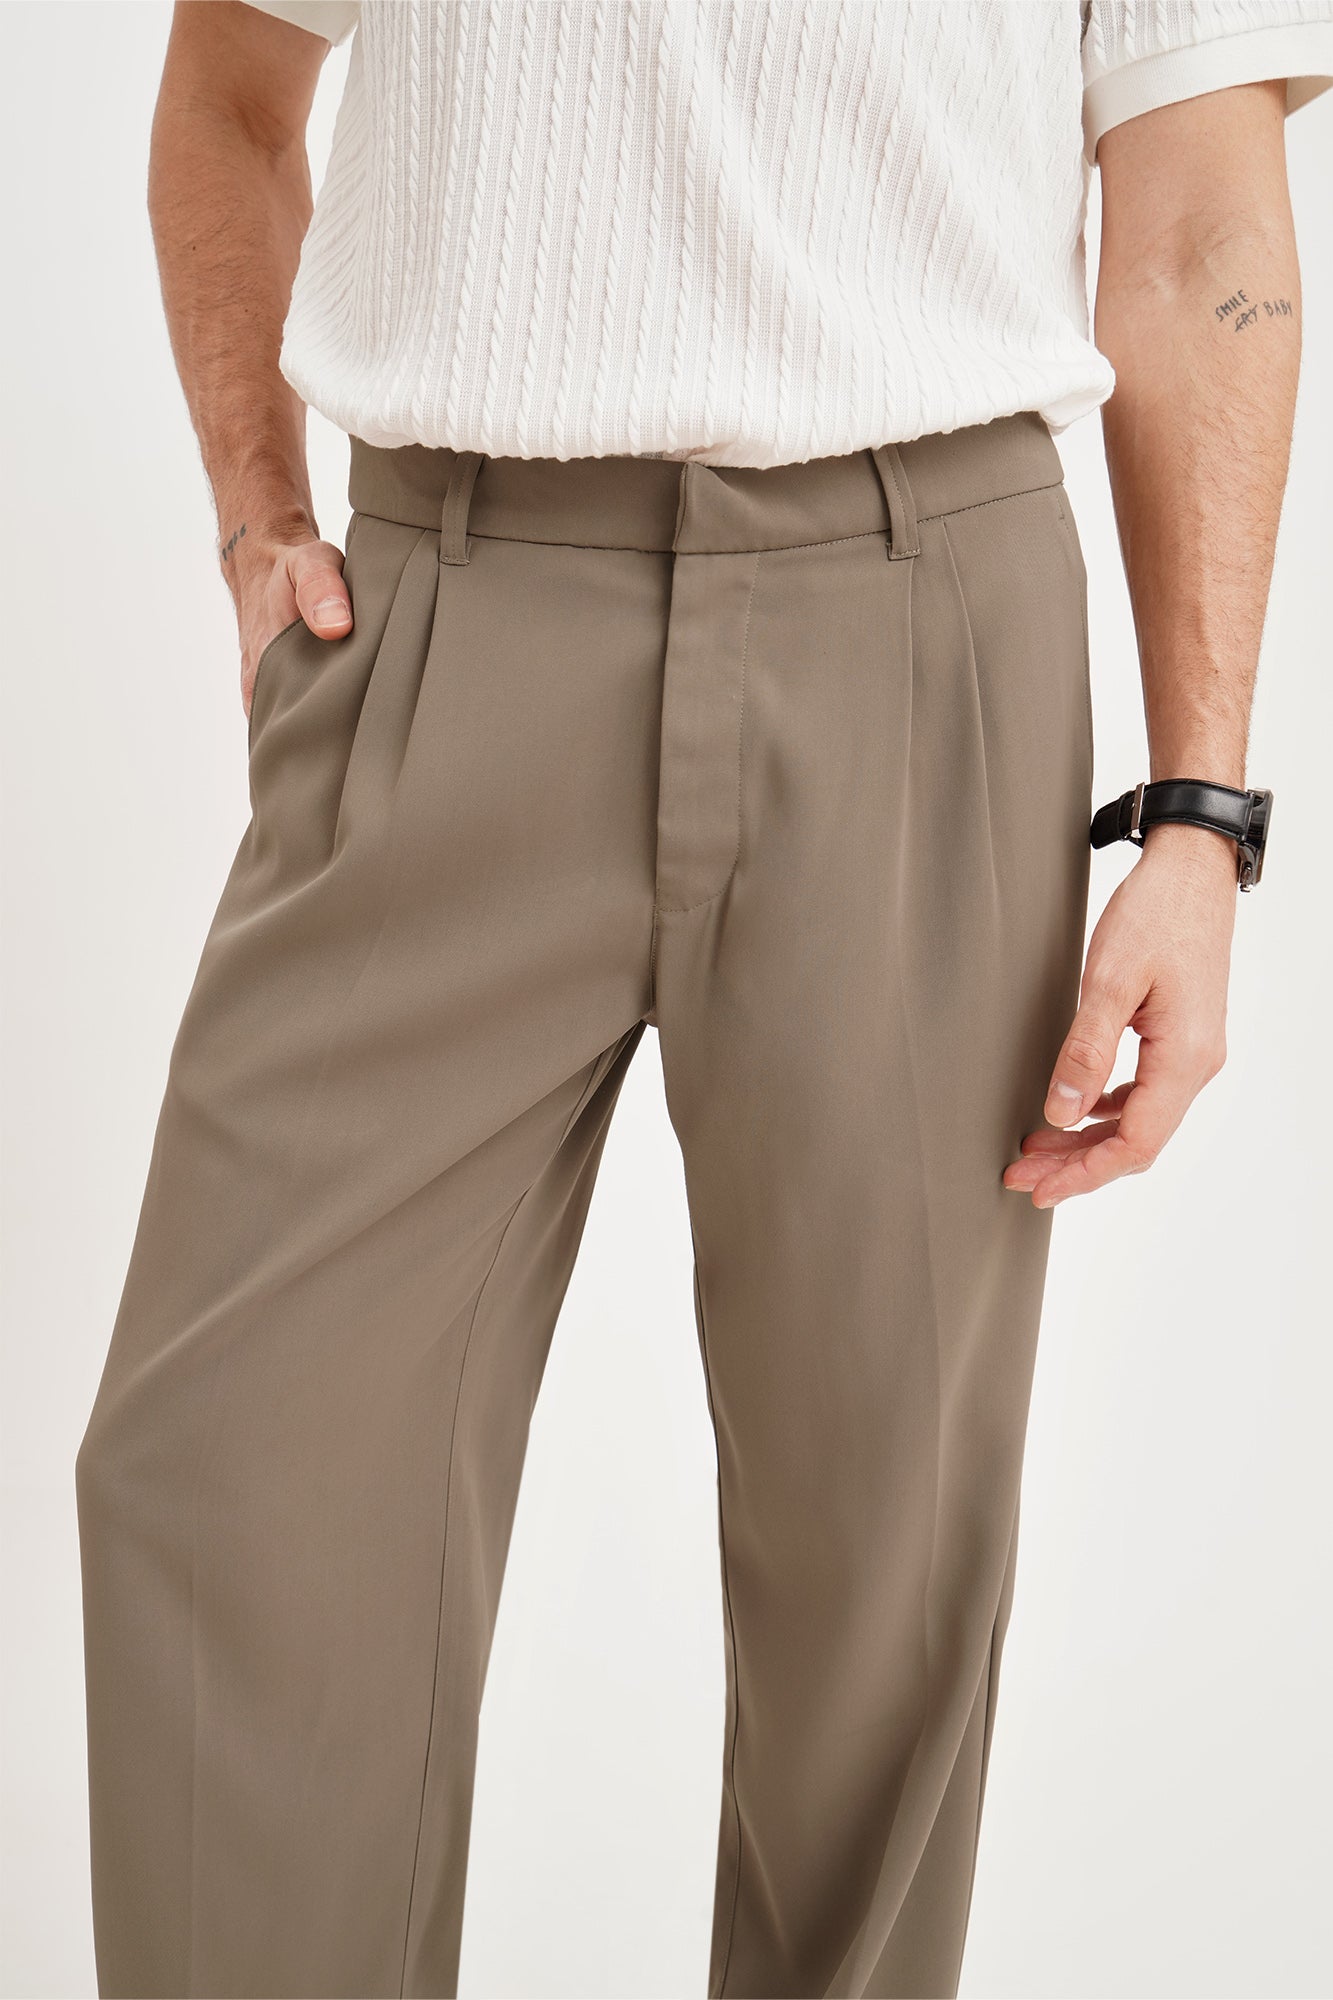 Proper Cloth Casual Pants: Types of Fit - Proper Cloth Help